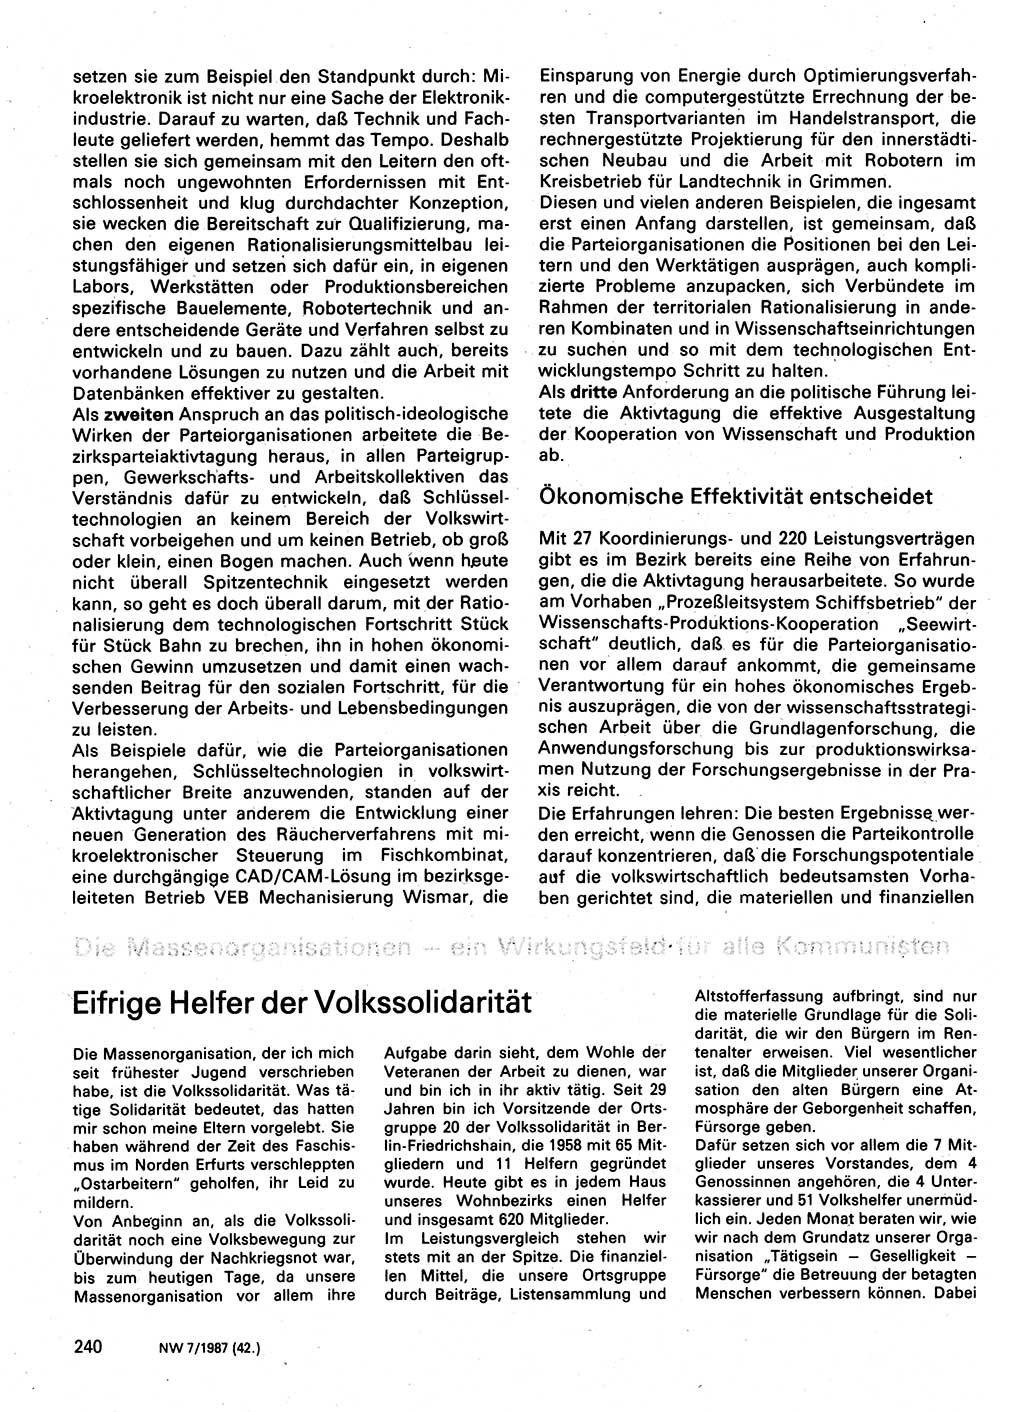 Neuer Weg (NW), Organ des Zentralkomitees (ZK) der SED (Sozialistische Einheitspartei Deutschlands) für Fragen des Parteilebens, 42. Jahrgang [Deutsche Demokratische Republik (DDR)] 1987, Seite 240 (NW ZK SED DDR 1987, S. 240)